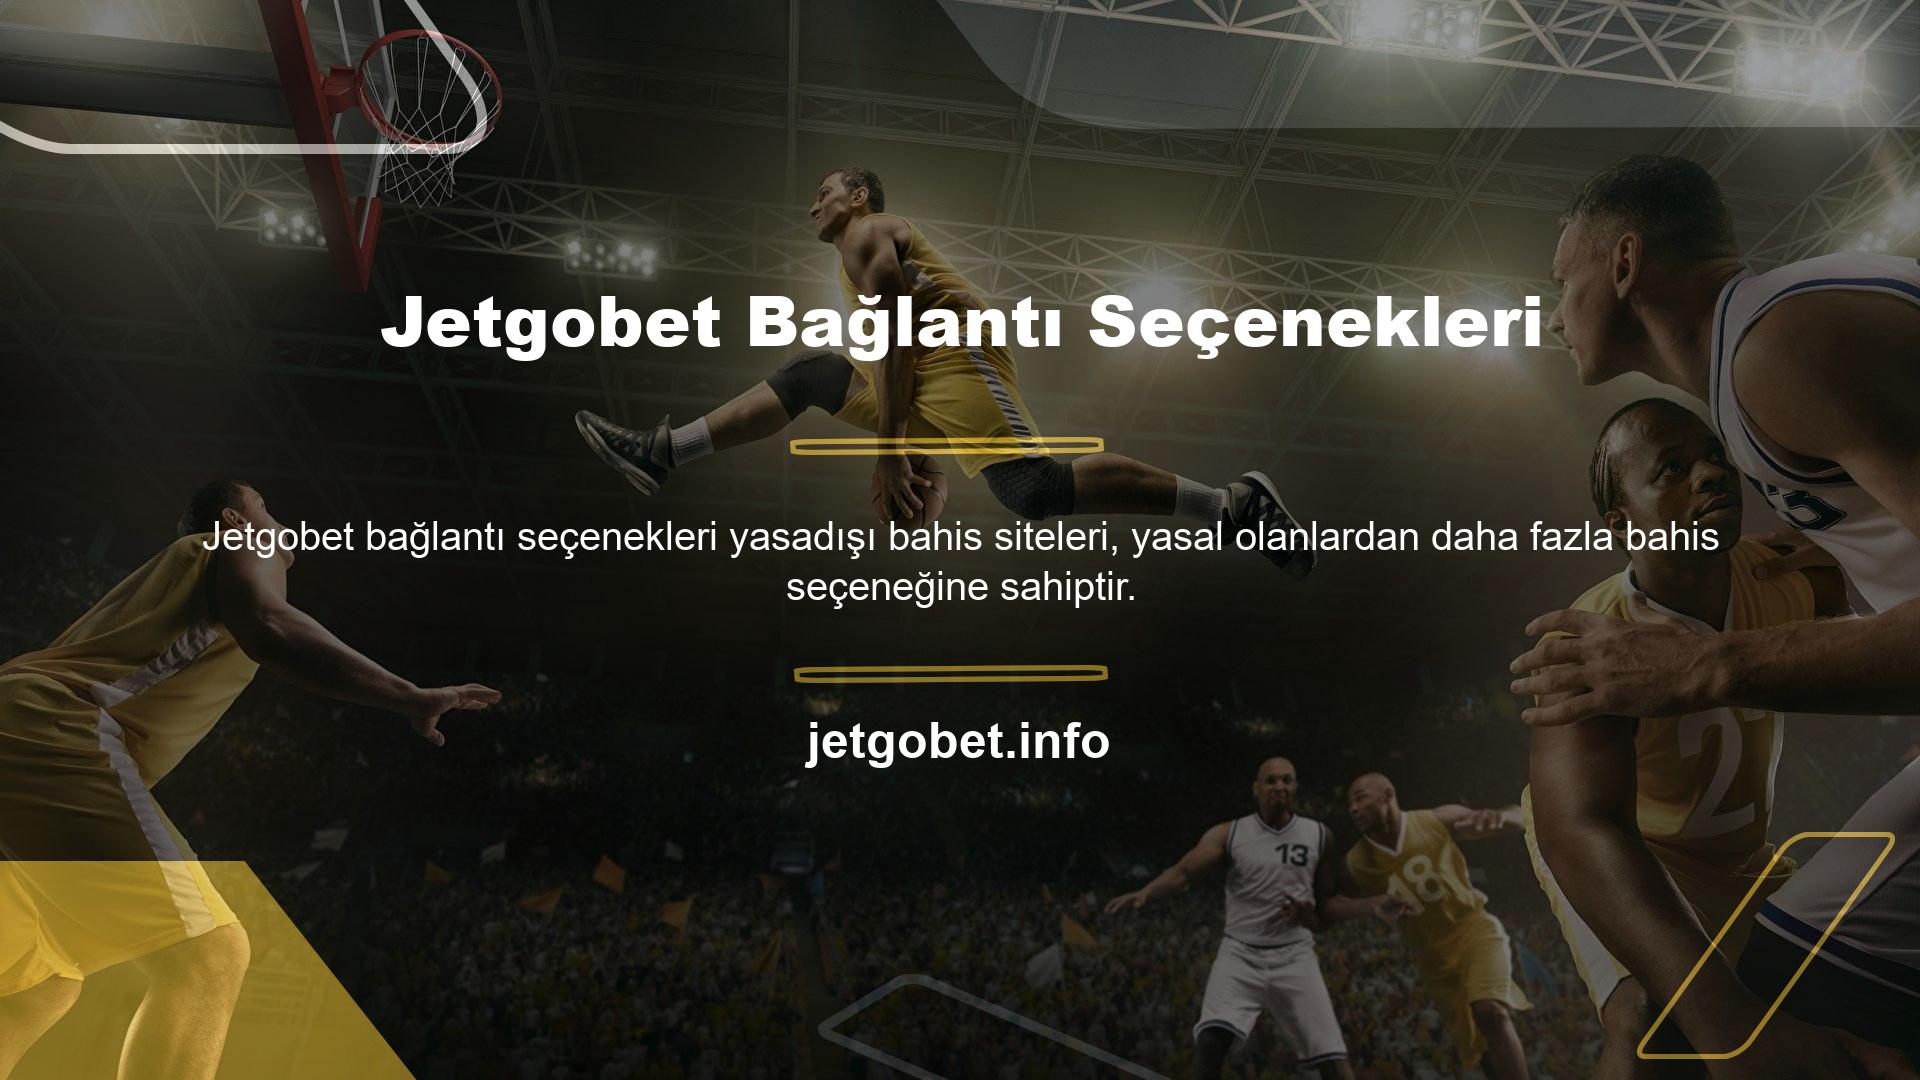 Türkiye'de faaliyet gösteren Jetgobet, oyun ve casino seçeneklerini tek çatı altında sunarak farklı oyuncuların ihtiyaçlarını başarıyla karşılamıştır